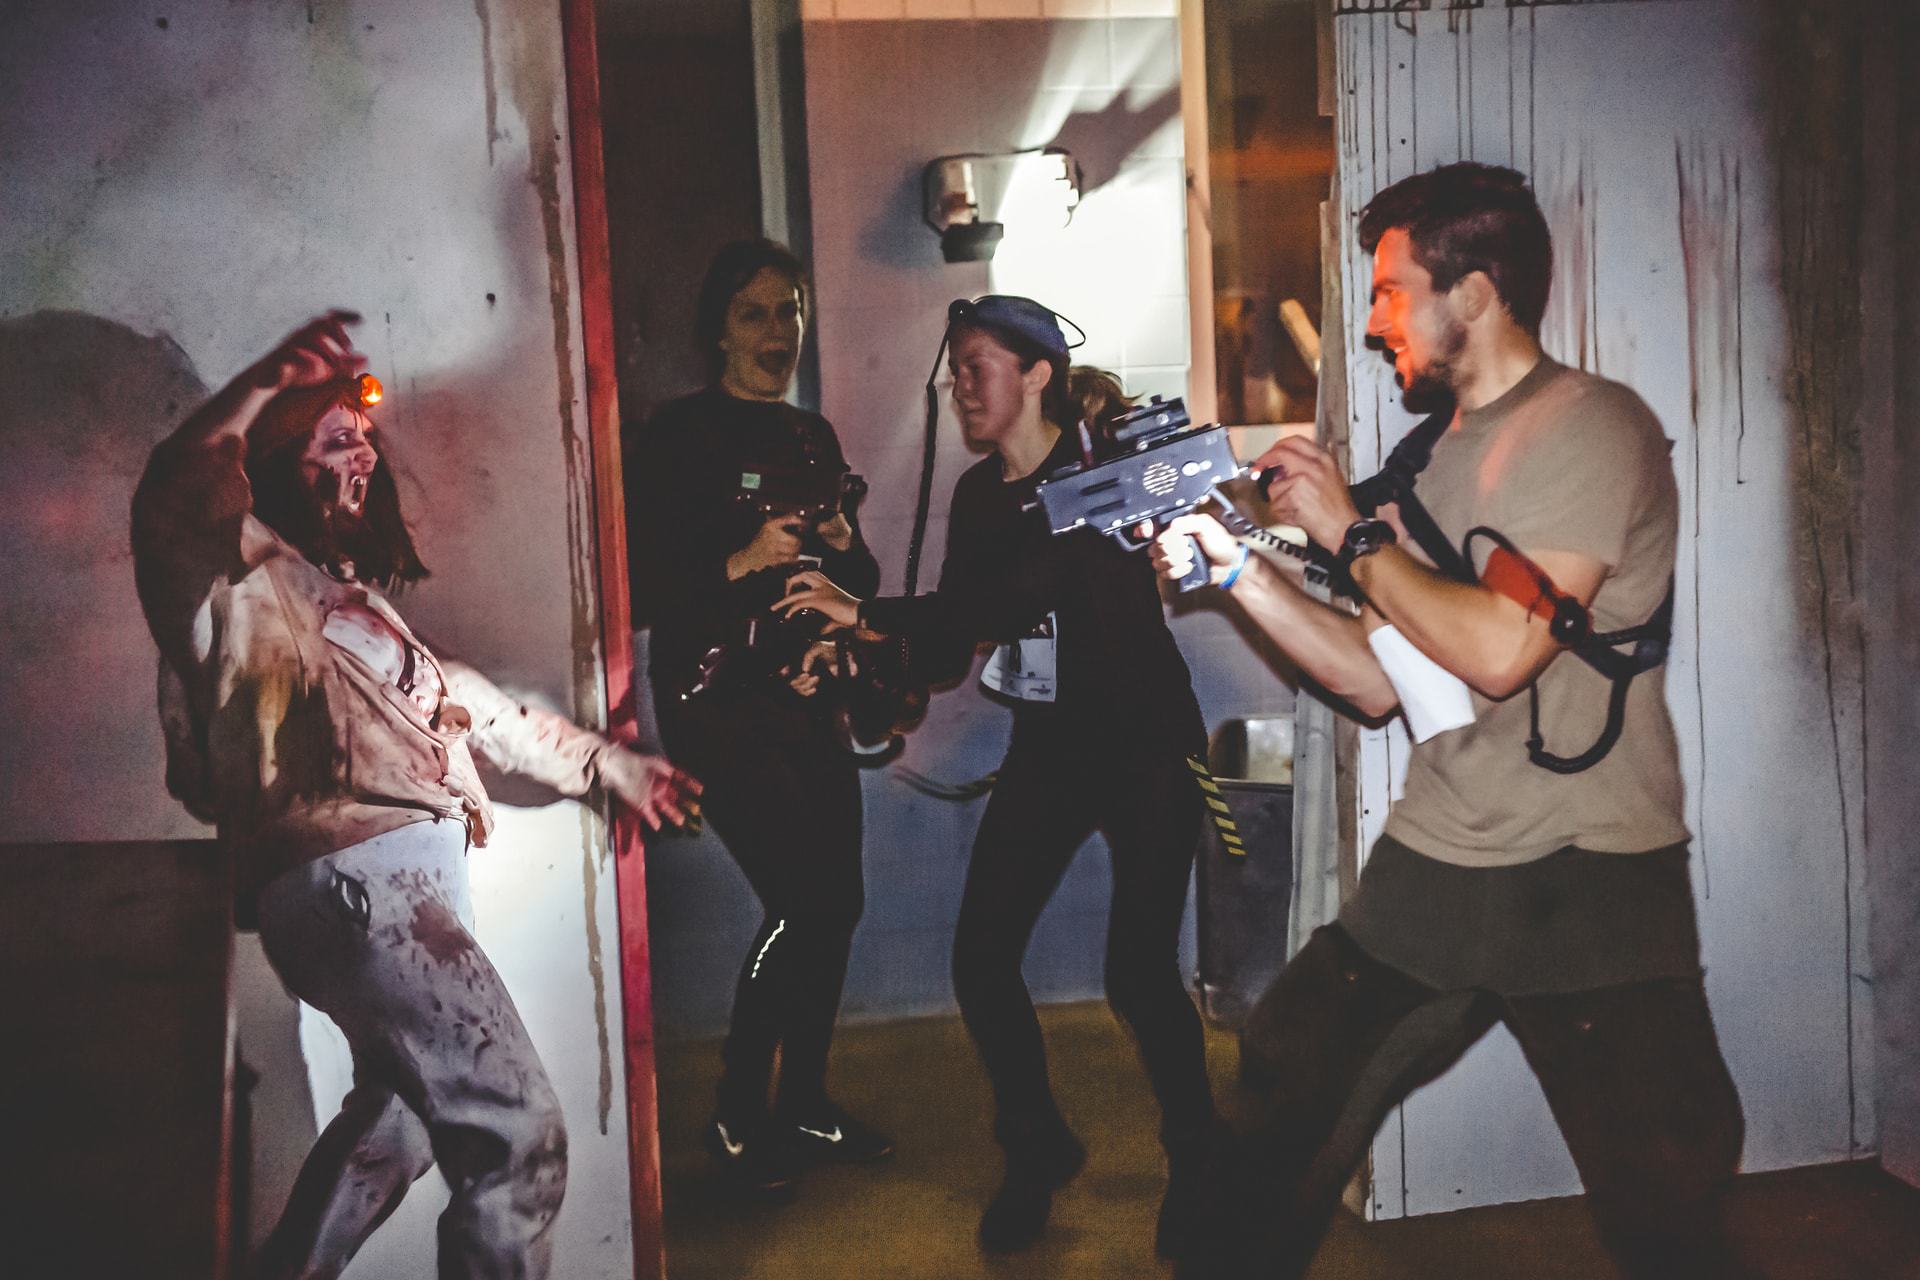 Zombie Lasergame